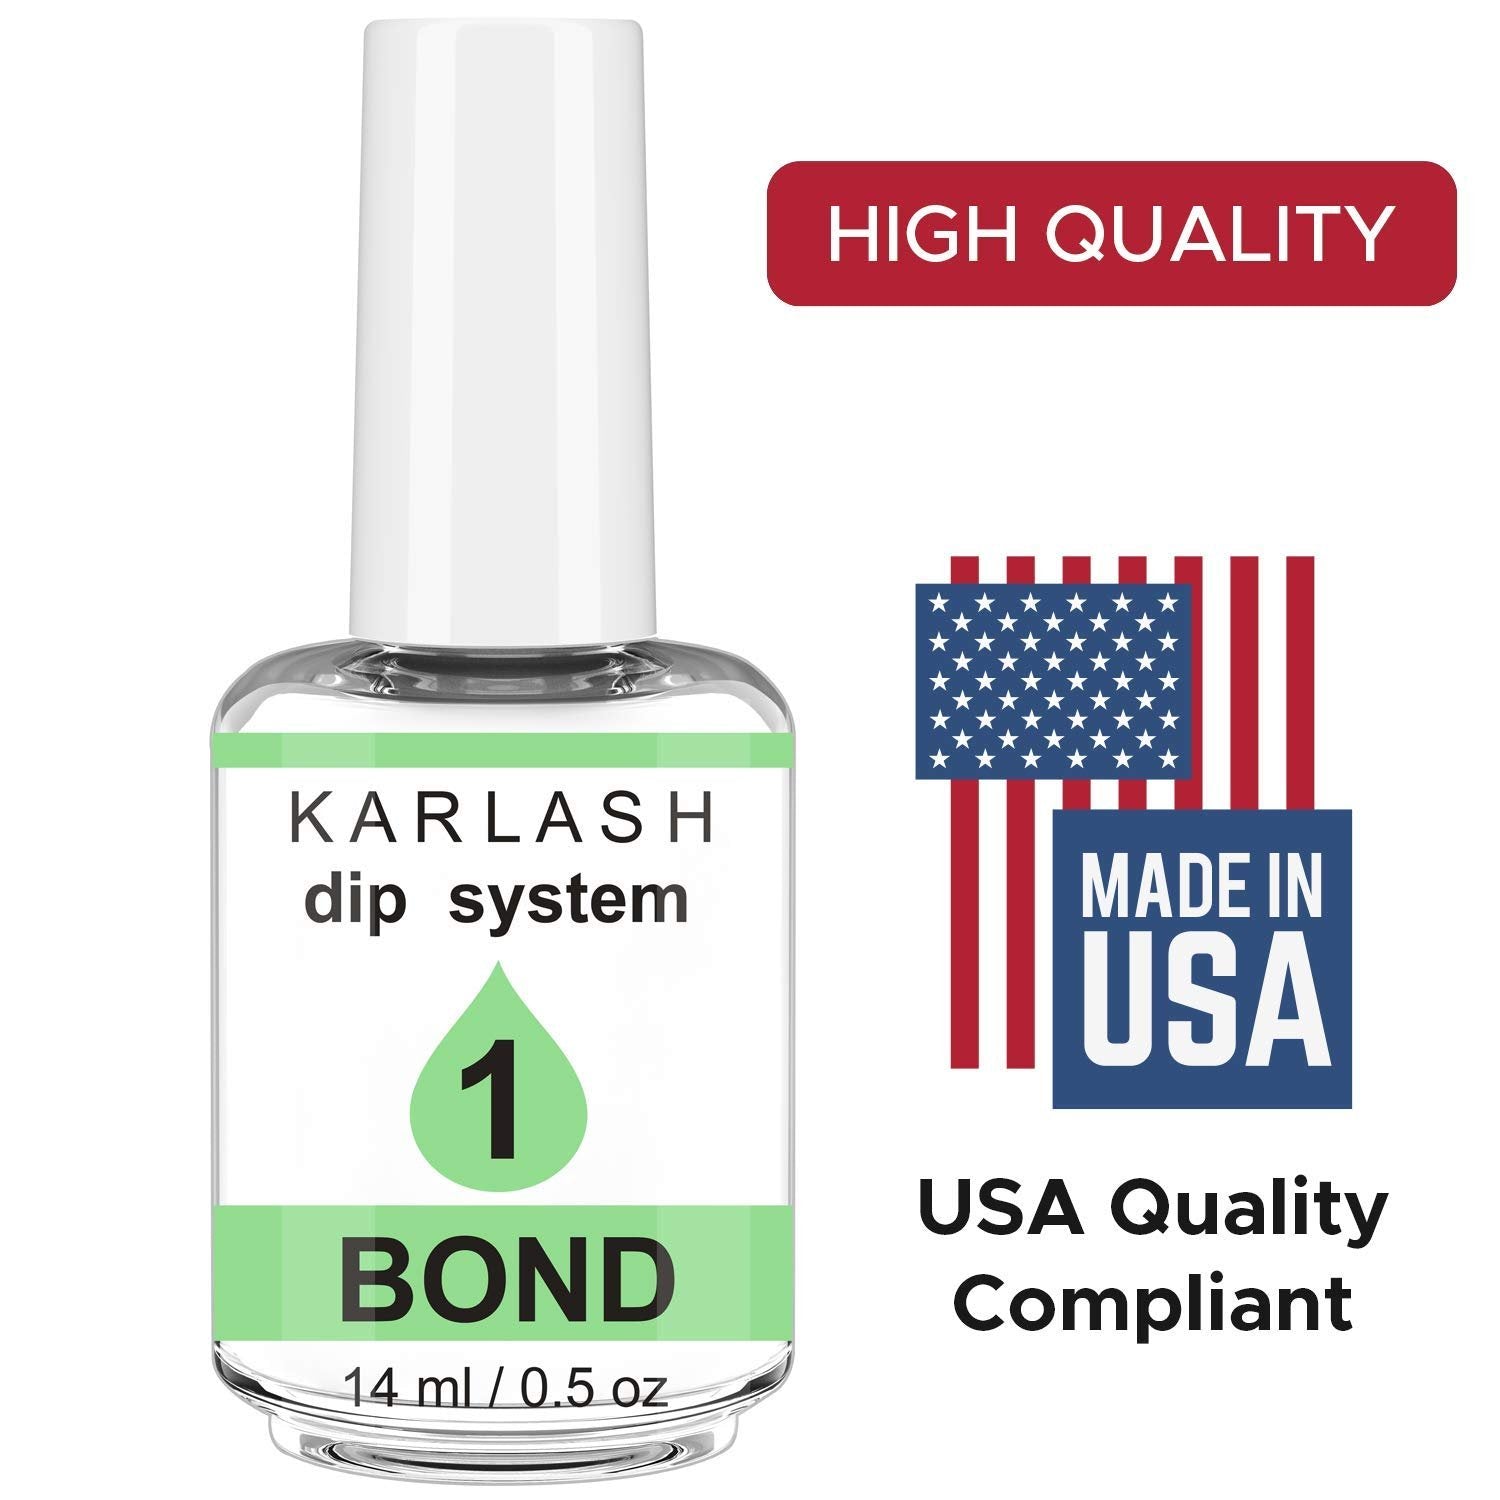 Karlash Gel Base DIP Powder System 0.5 oz (Step 1 Bond)